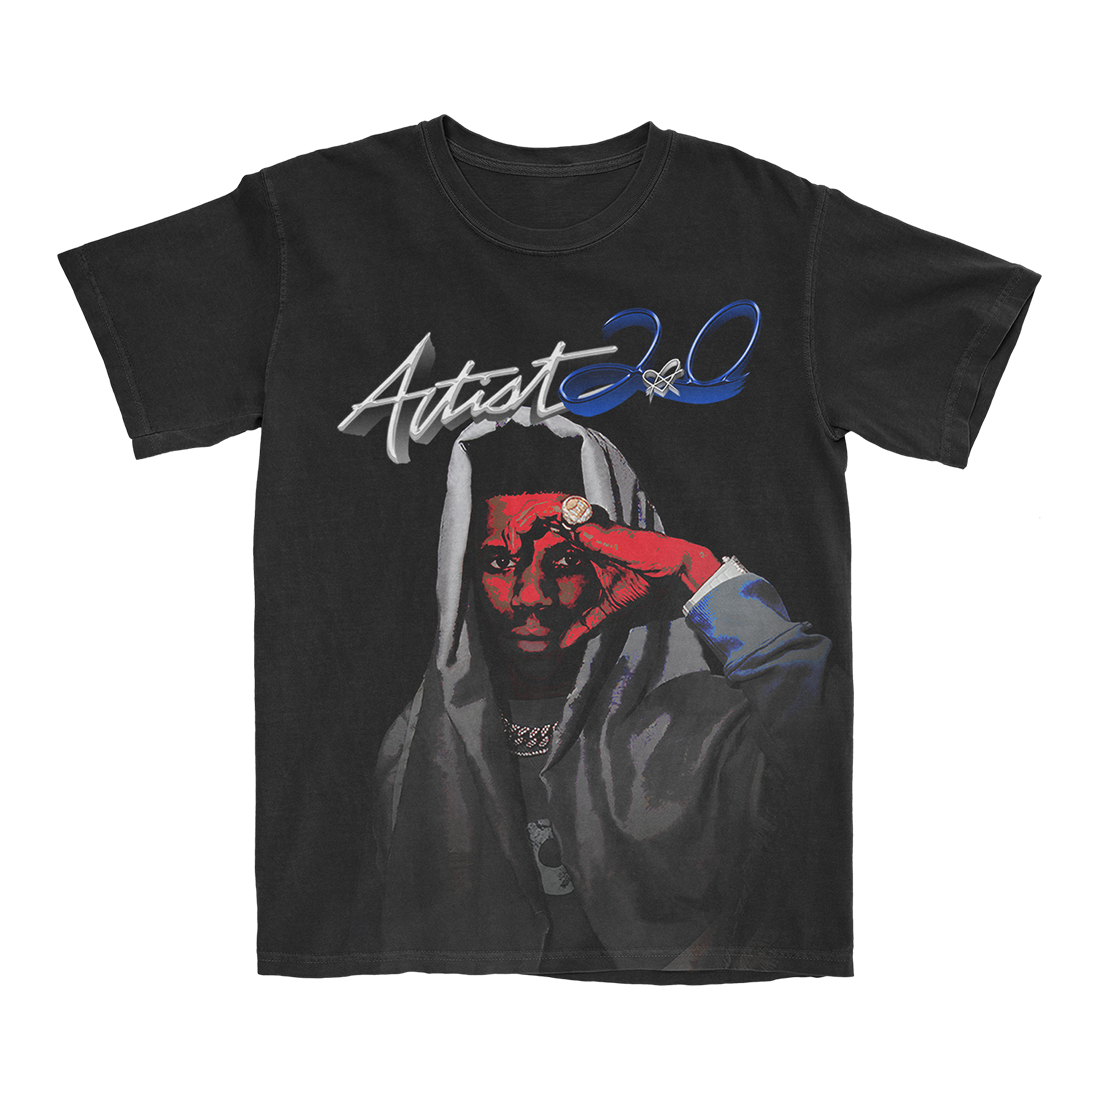 Artist 2.0 T-shirt